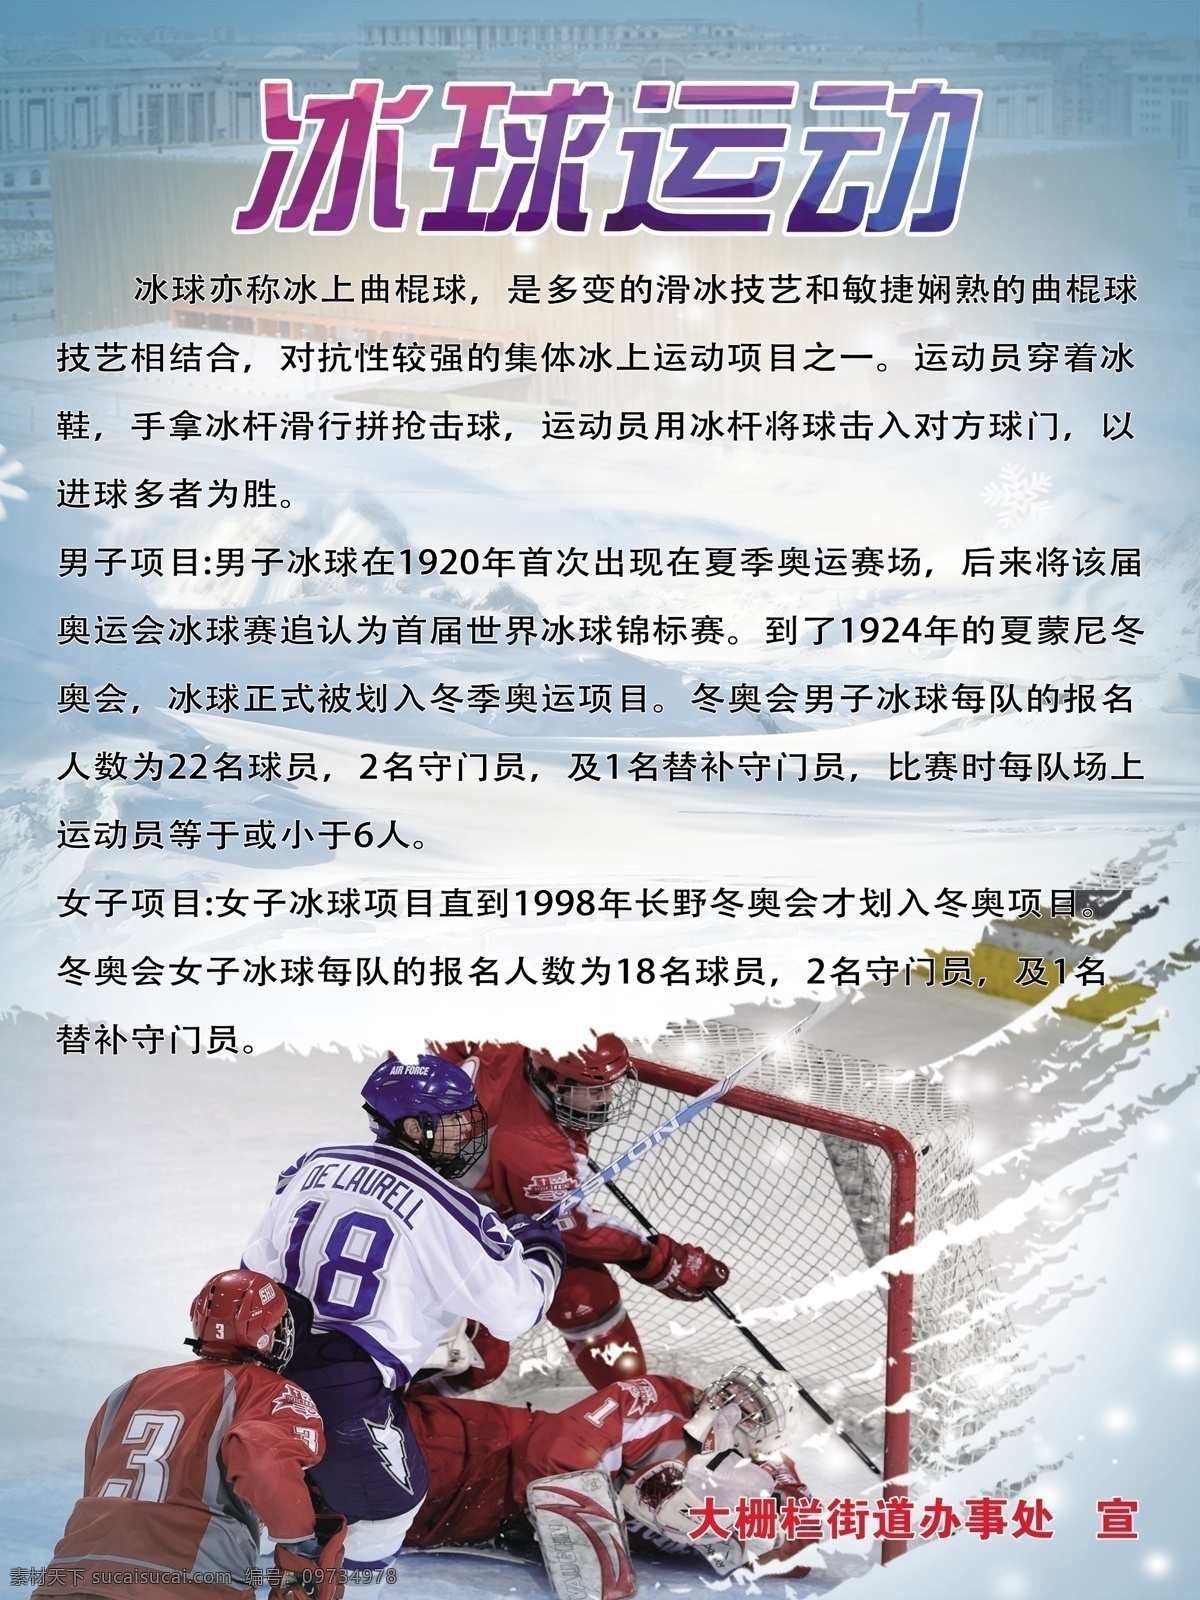 冰球运动滑雪 冬季冰球运动 冰球运动项目 滑雪 体育运动 体育项目